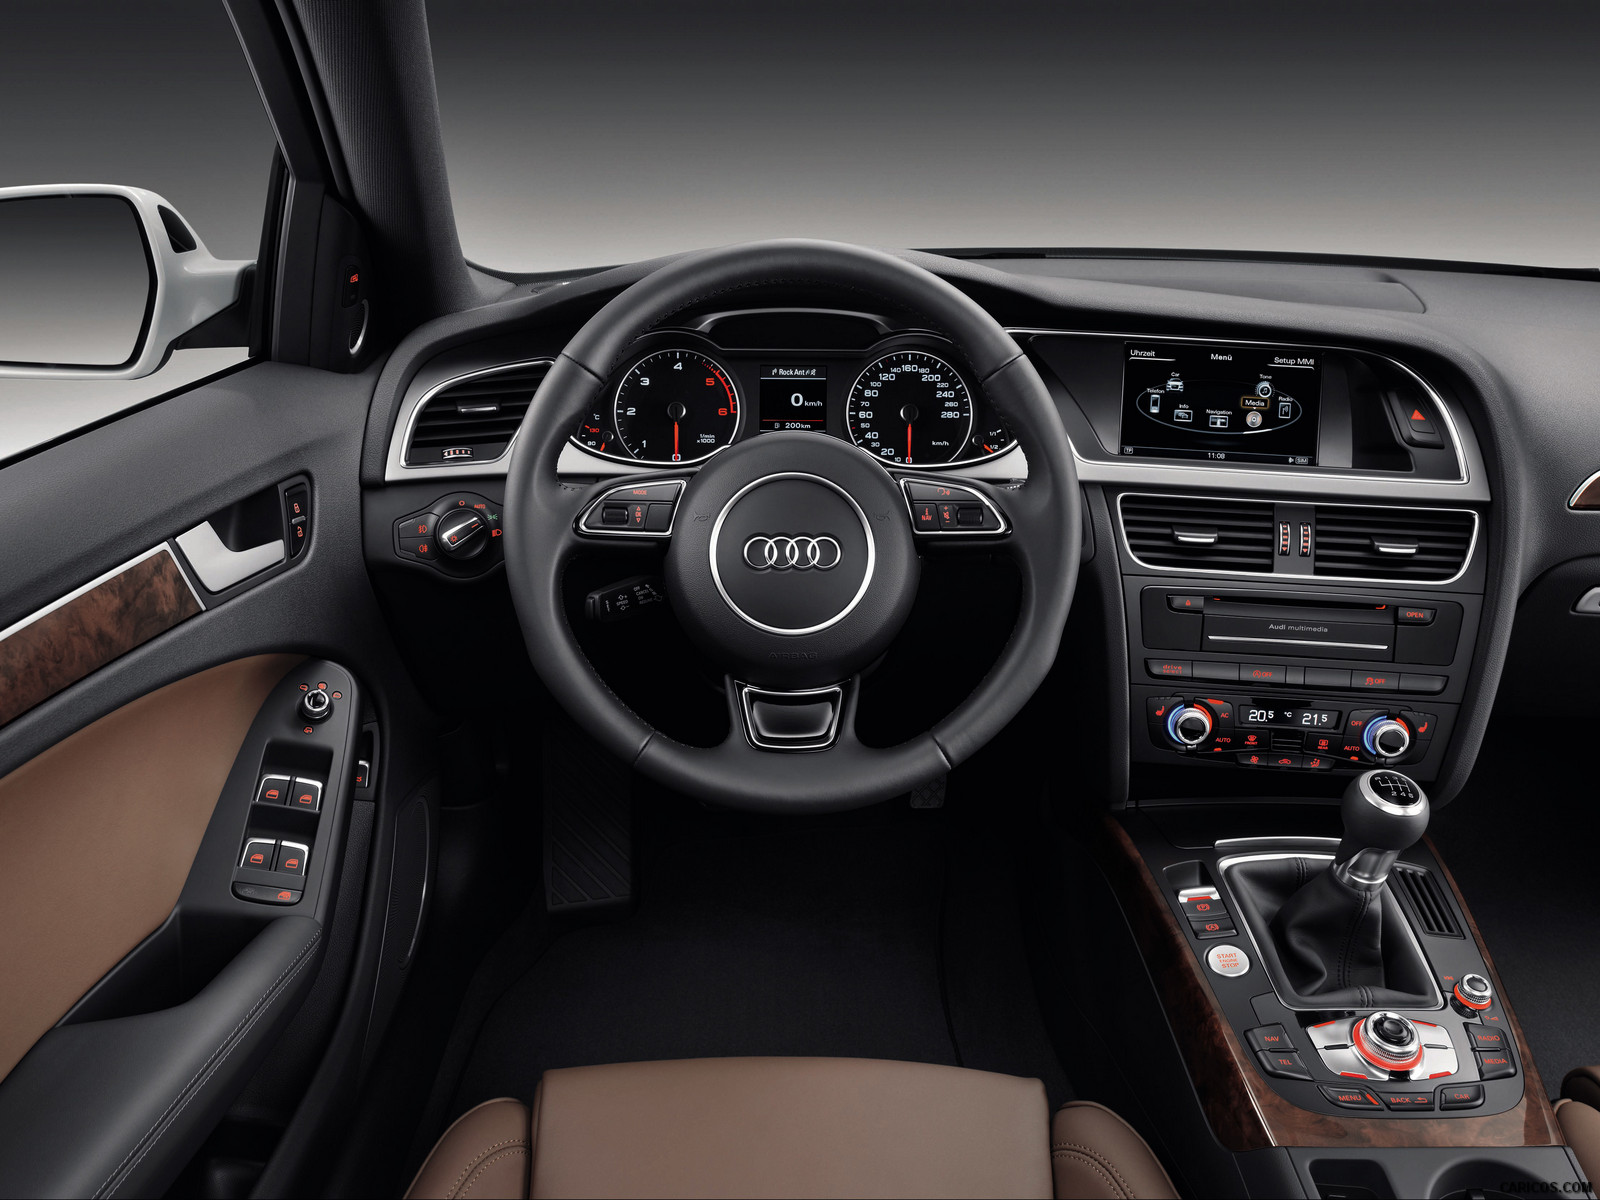 Audi A4 Avant 2014       caricos 